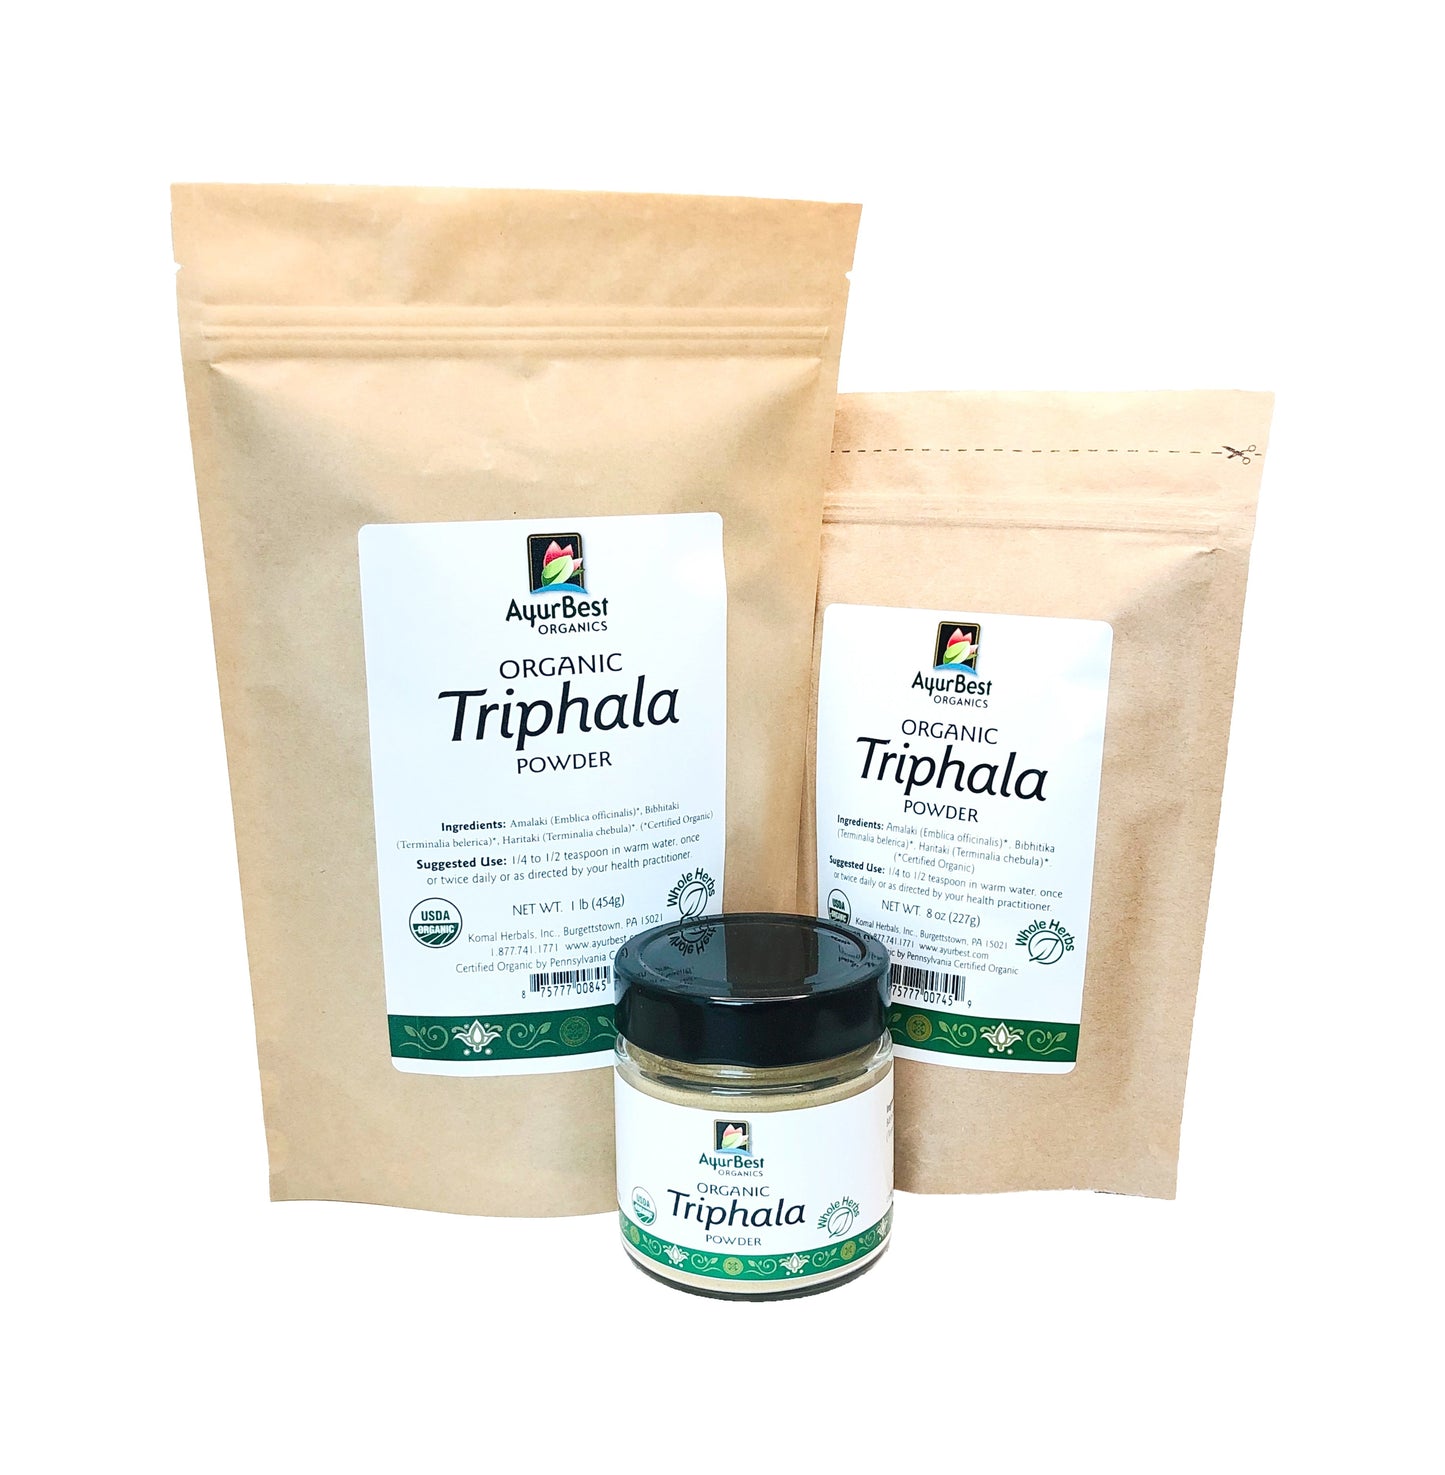 Wholesale Spices & Herbs - Triphala Powder, Organic 1 lb (454g) Bag